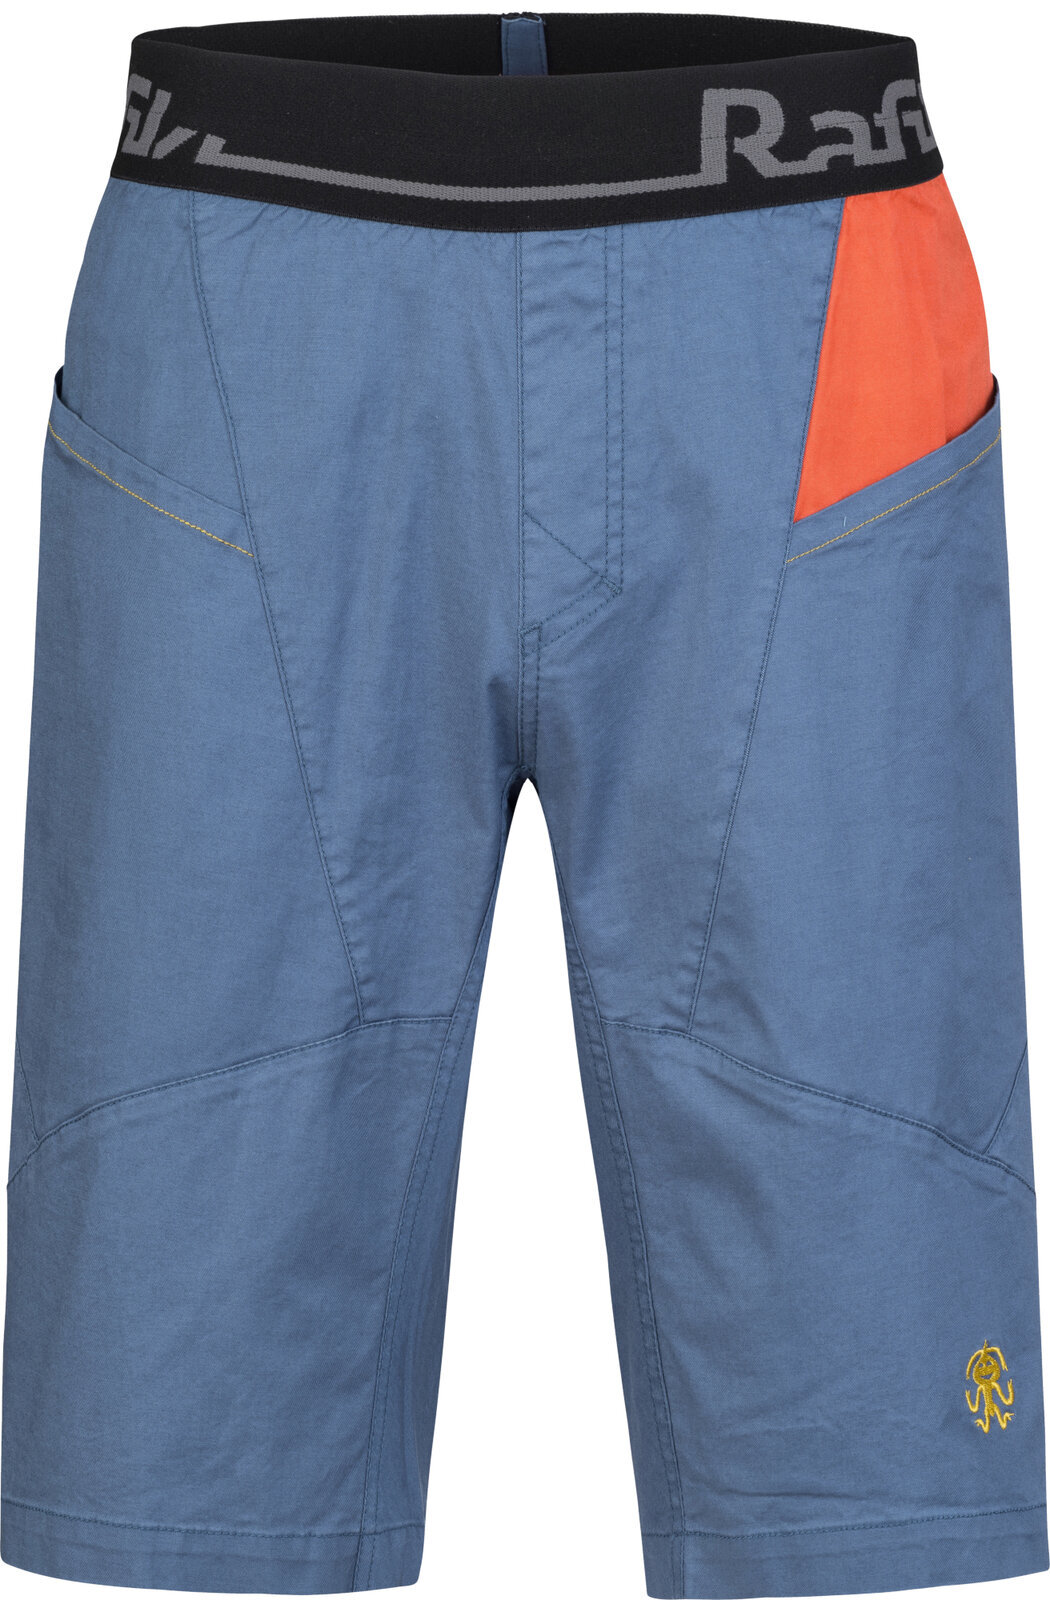 Outdoor Shorts Rafiki Megos Man Shorts Ensign Blue/Clay L Outdoor Shorts